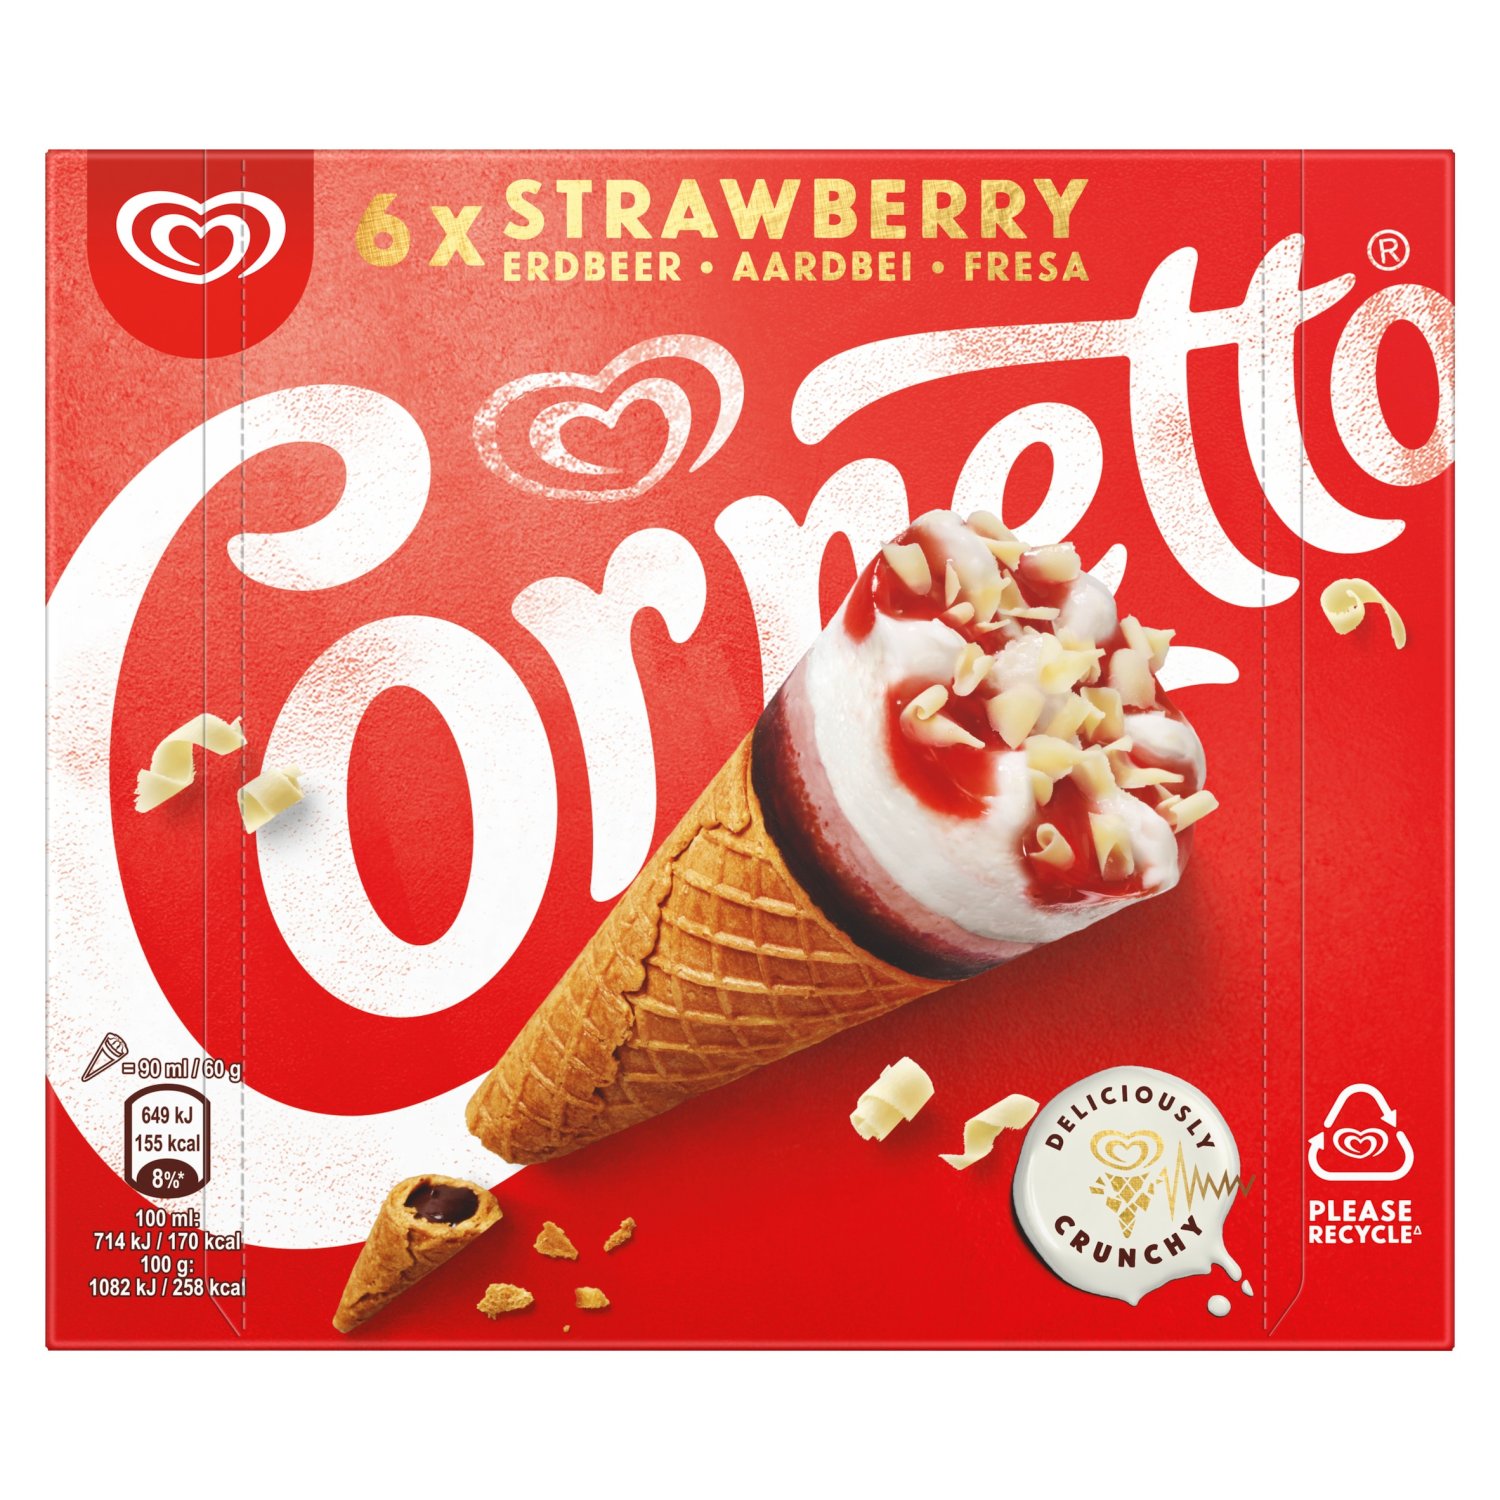 Cornetto Strawberry Ice Cream Cones 6 Pack (90 ml)